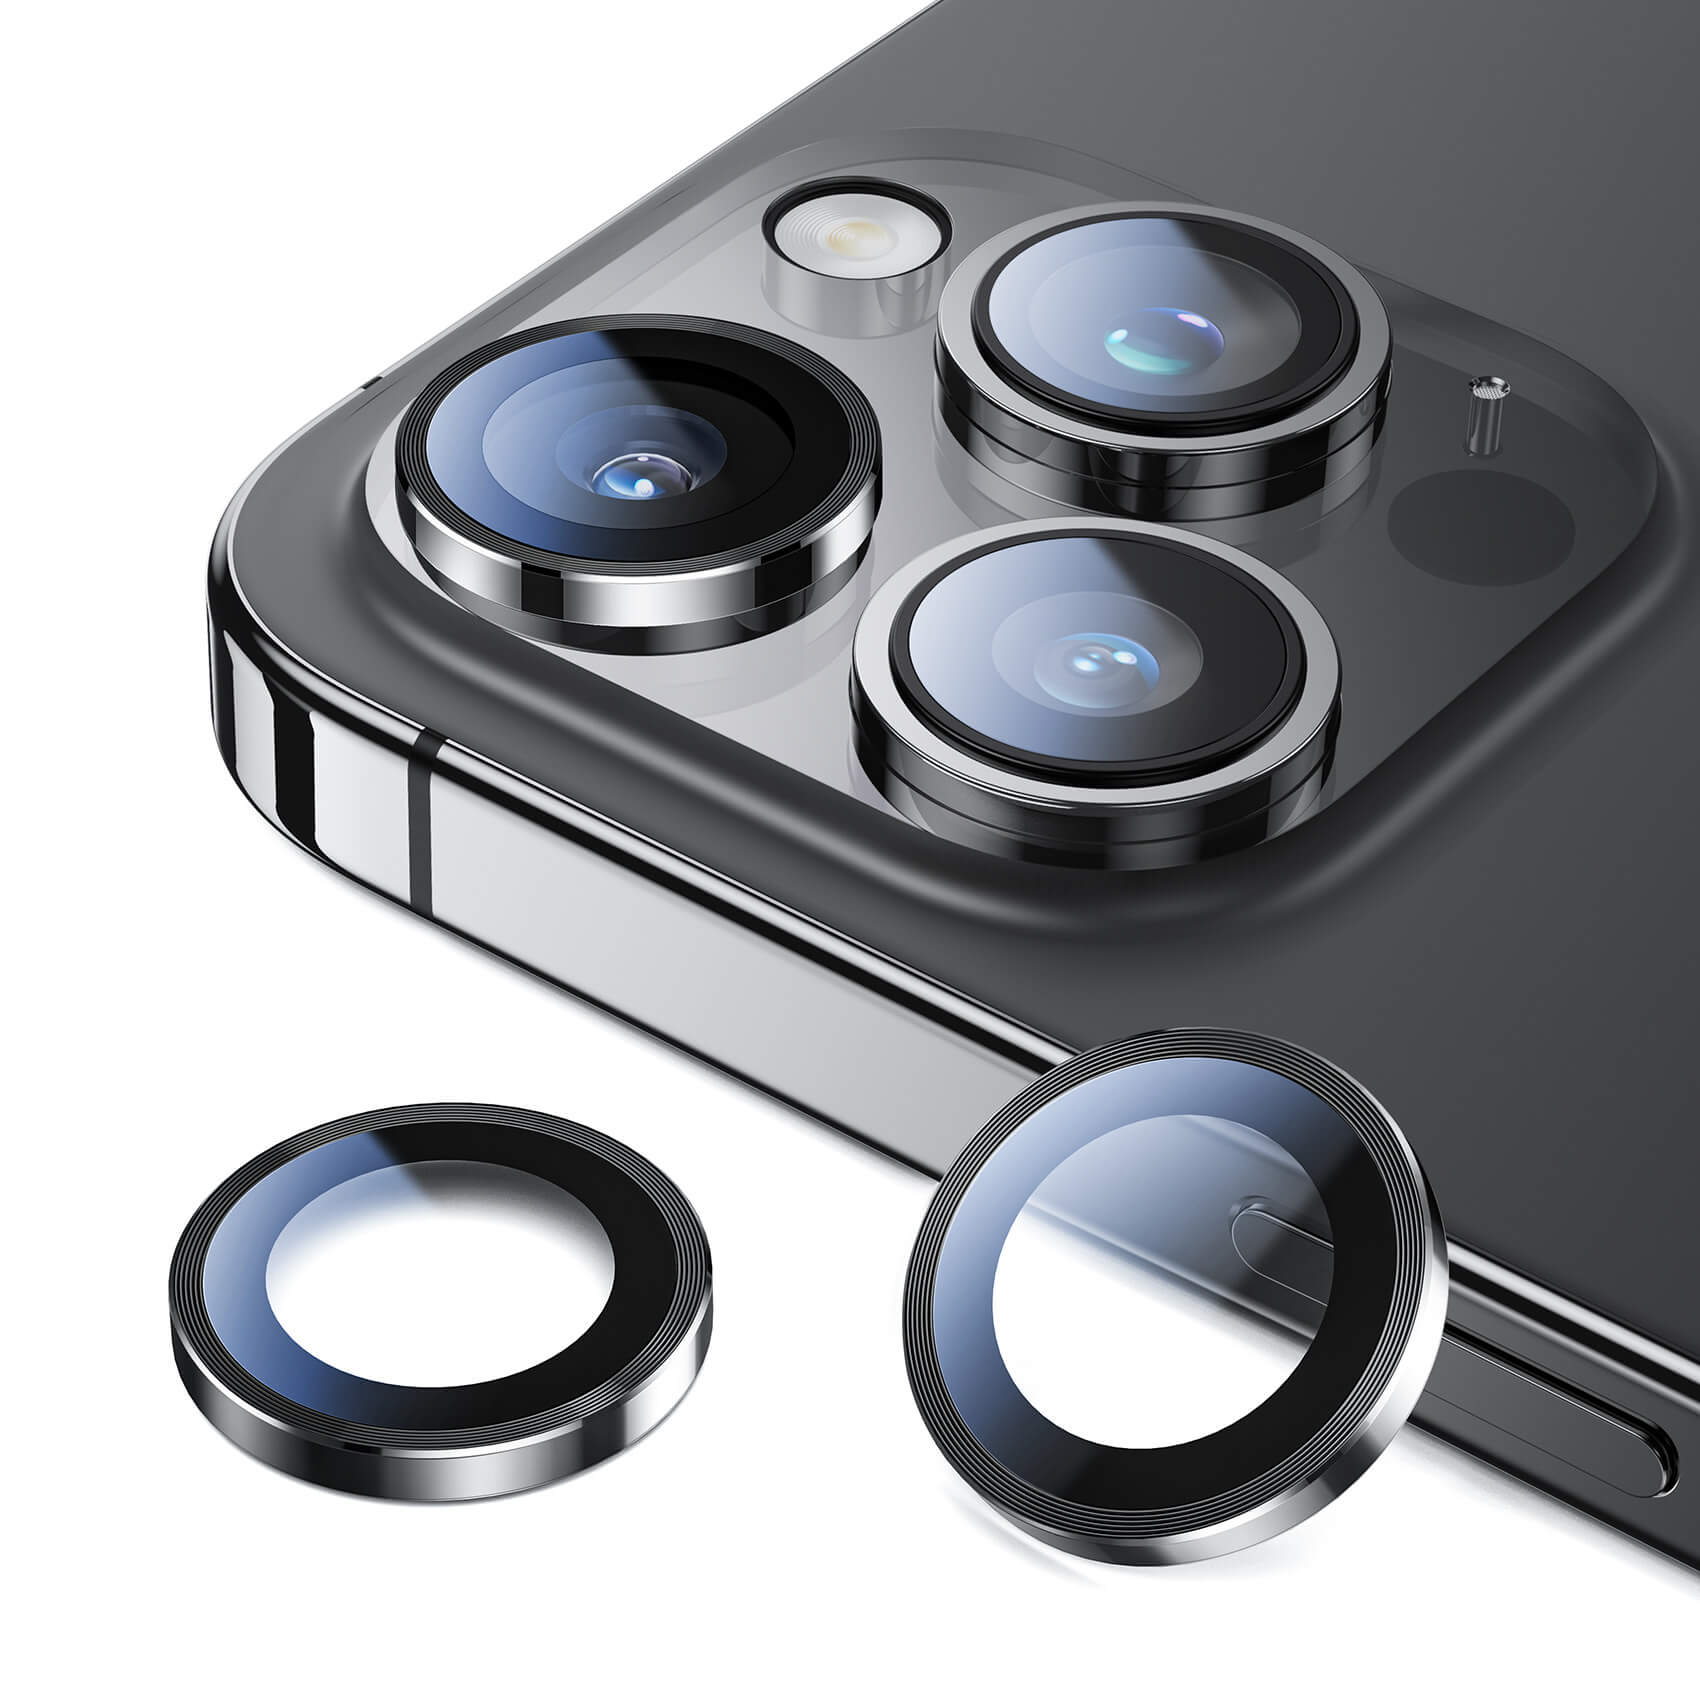 カメラレンズカバー iPhone11 pro max アイフォン レンズカバー カメラカバー レンズ保護 おしゃれ 可愛い